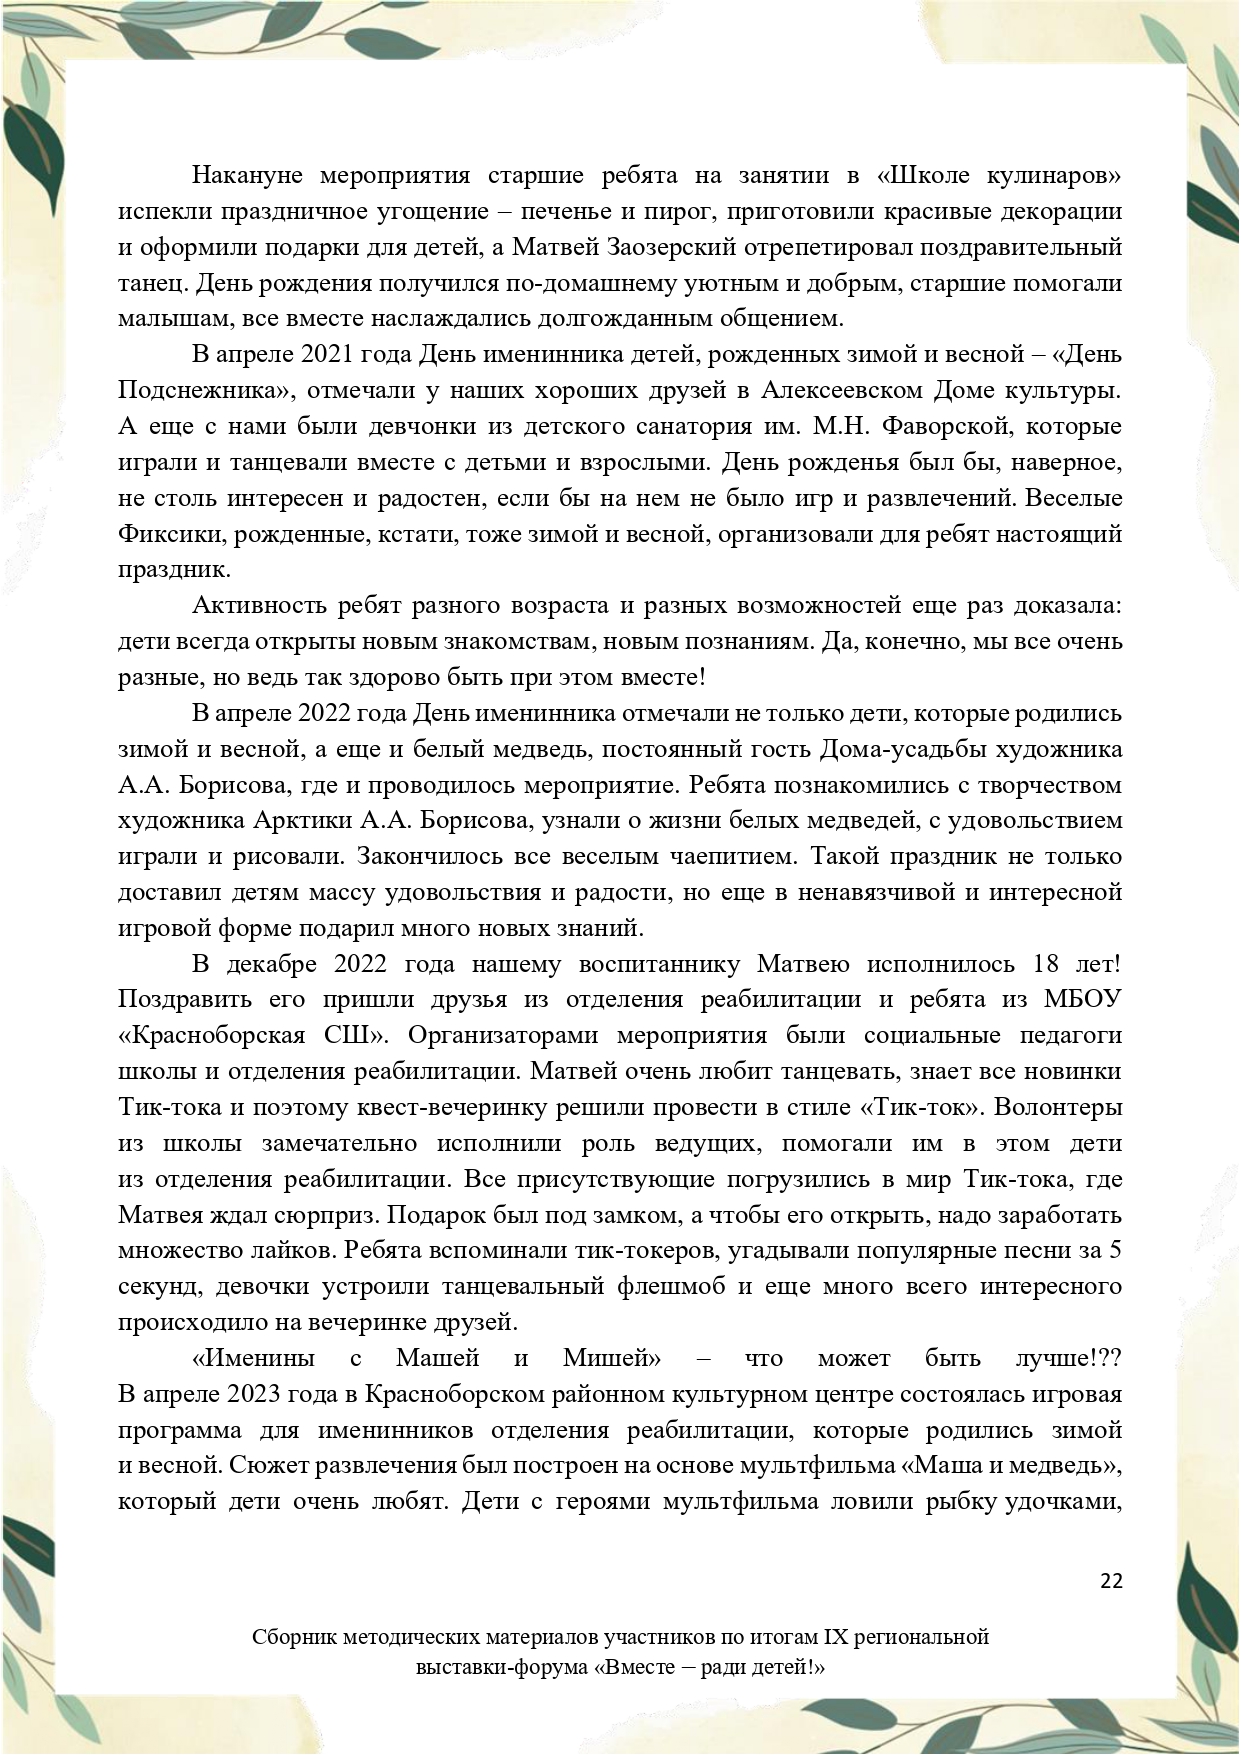 Sbornik_metodicheskikh_materialov_uchastnikov_IX_regionalnoy_vystavki-foruma_Vmeste__radi_detey_33__2023_page-0022